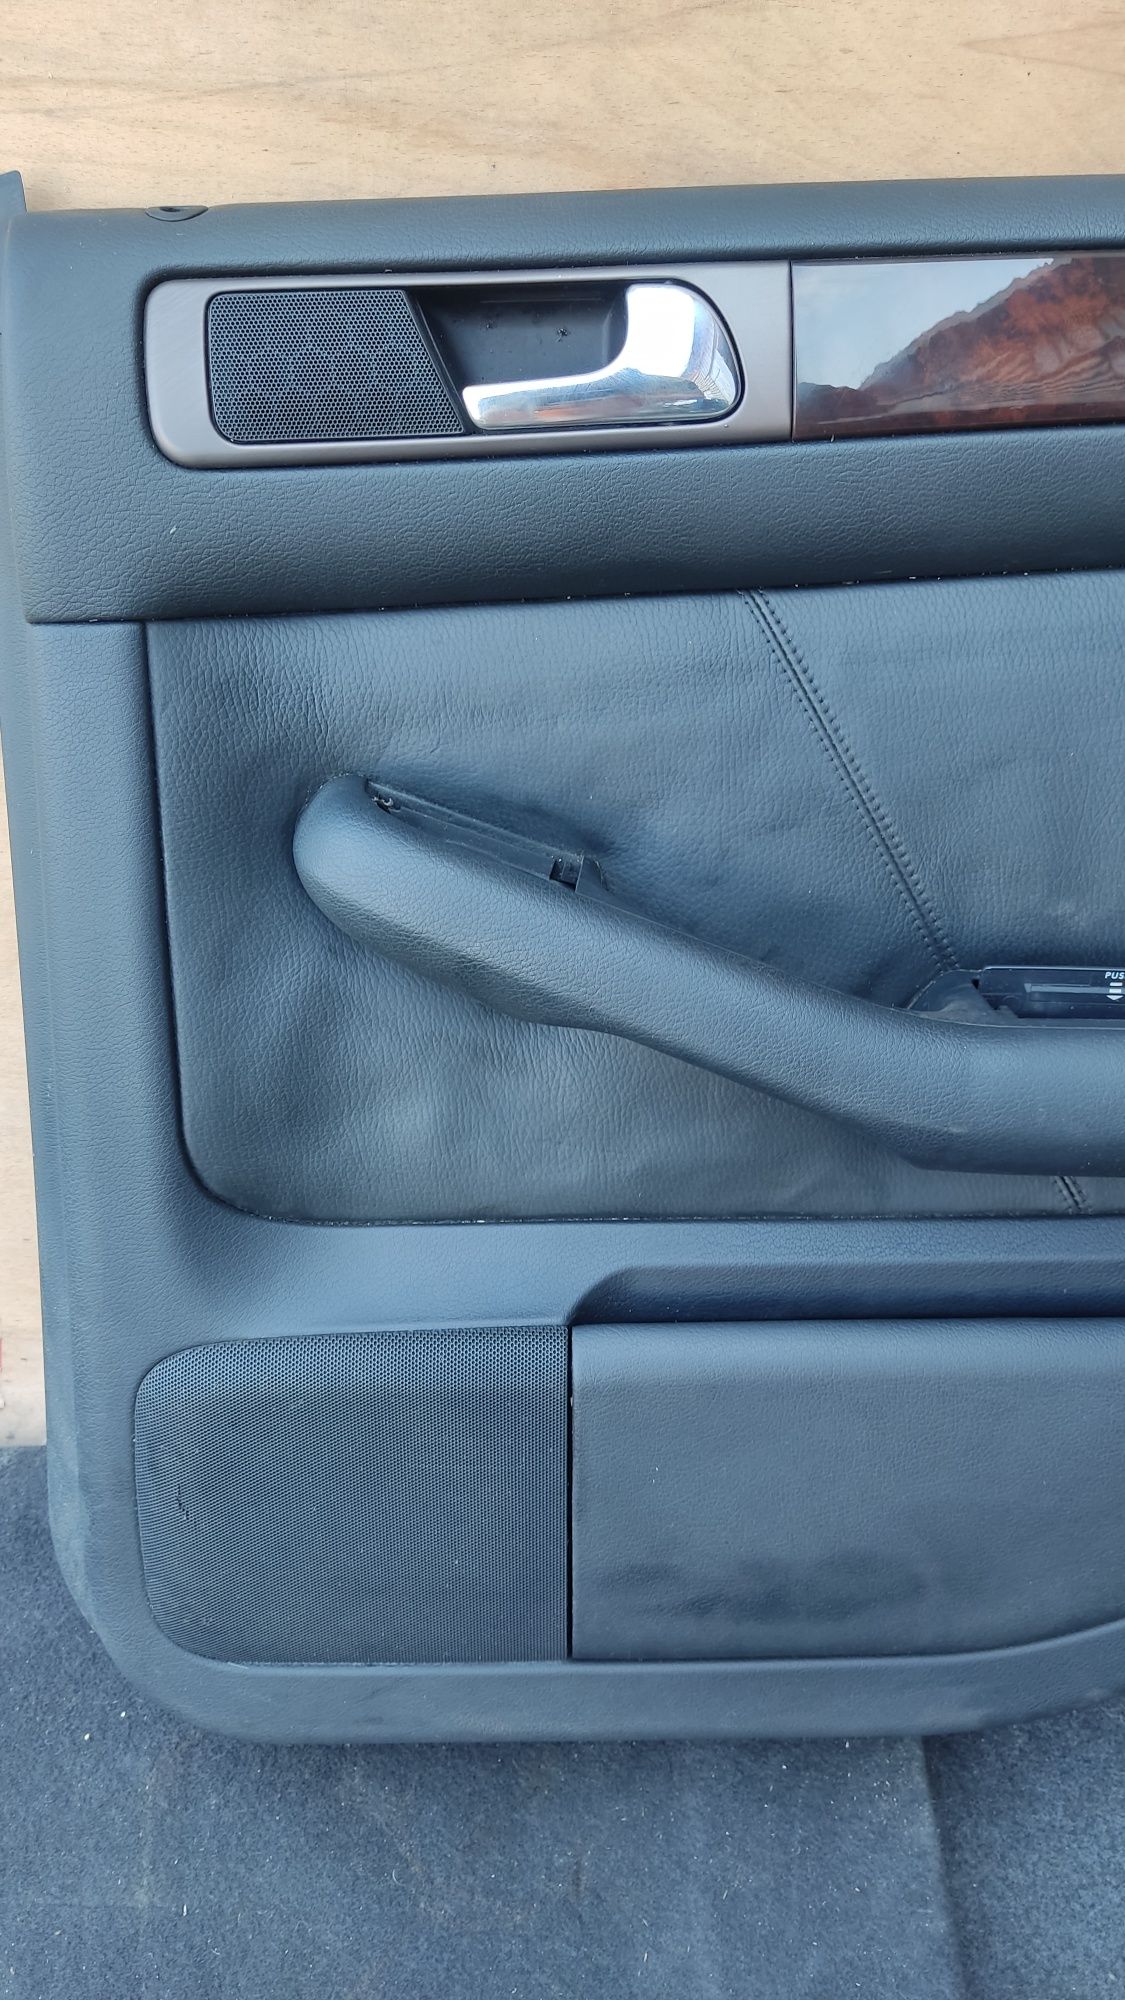 Boczek drzwi skórzany prawy tył do Audi A6 C5.